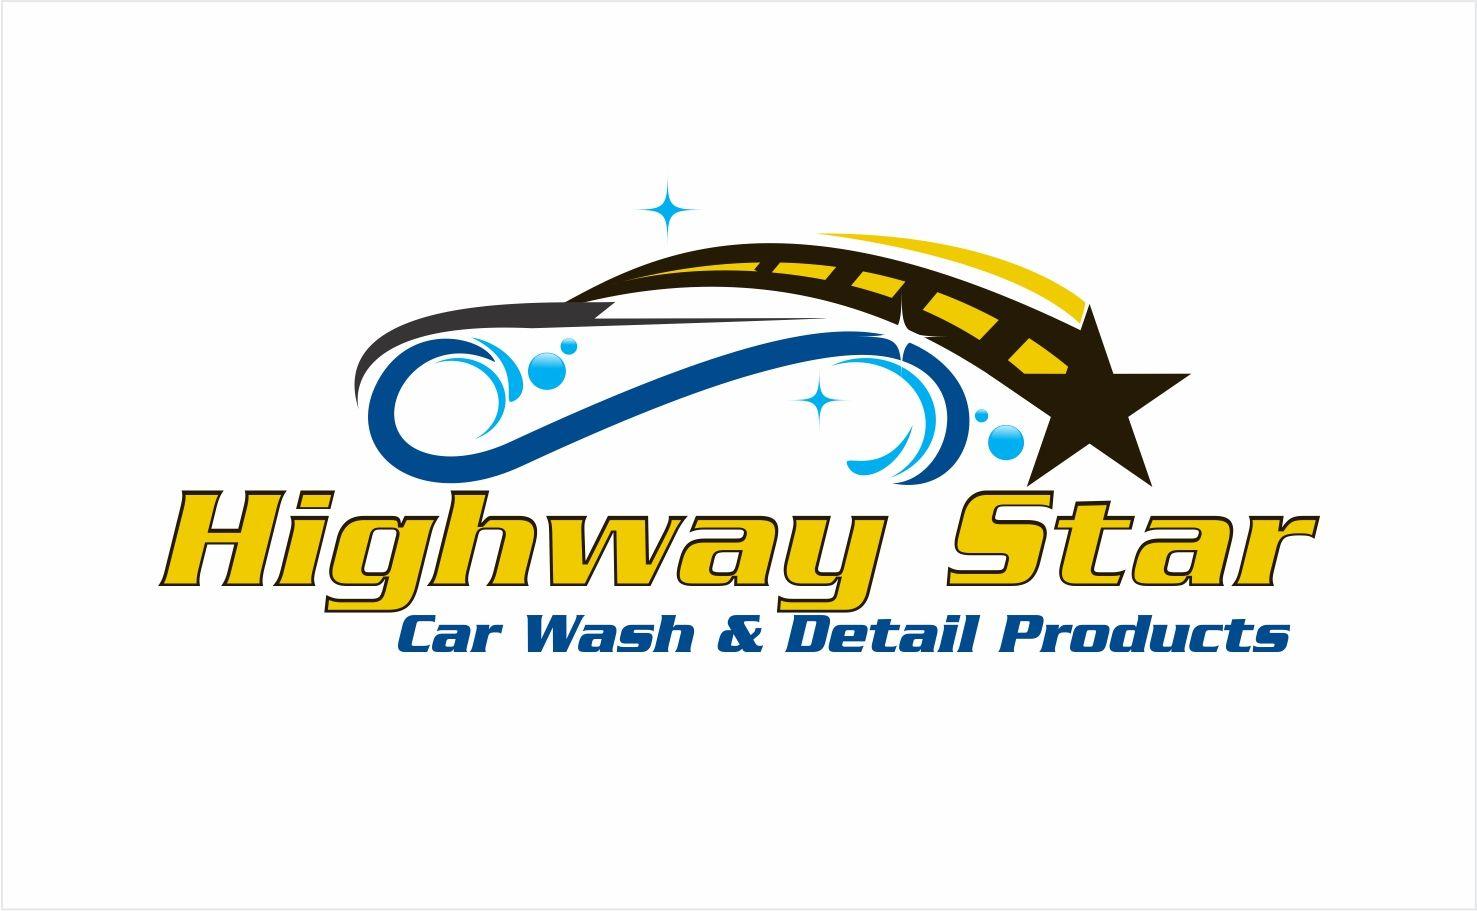 Highway Logo - Elegant, Playful, Manufacturer Logo Design for Highway Star Car Wash ...